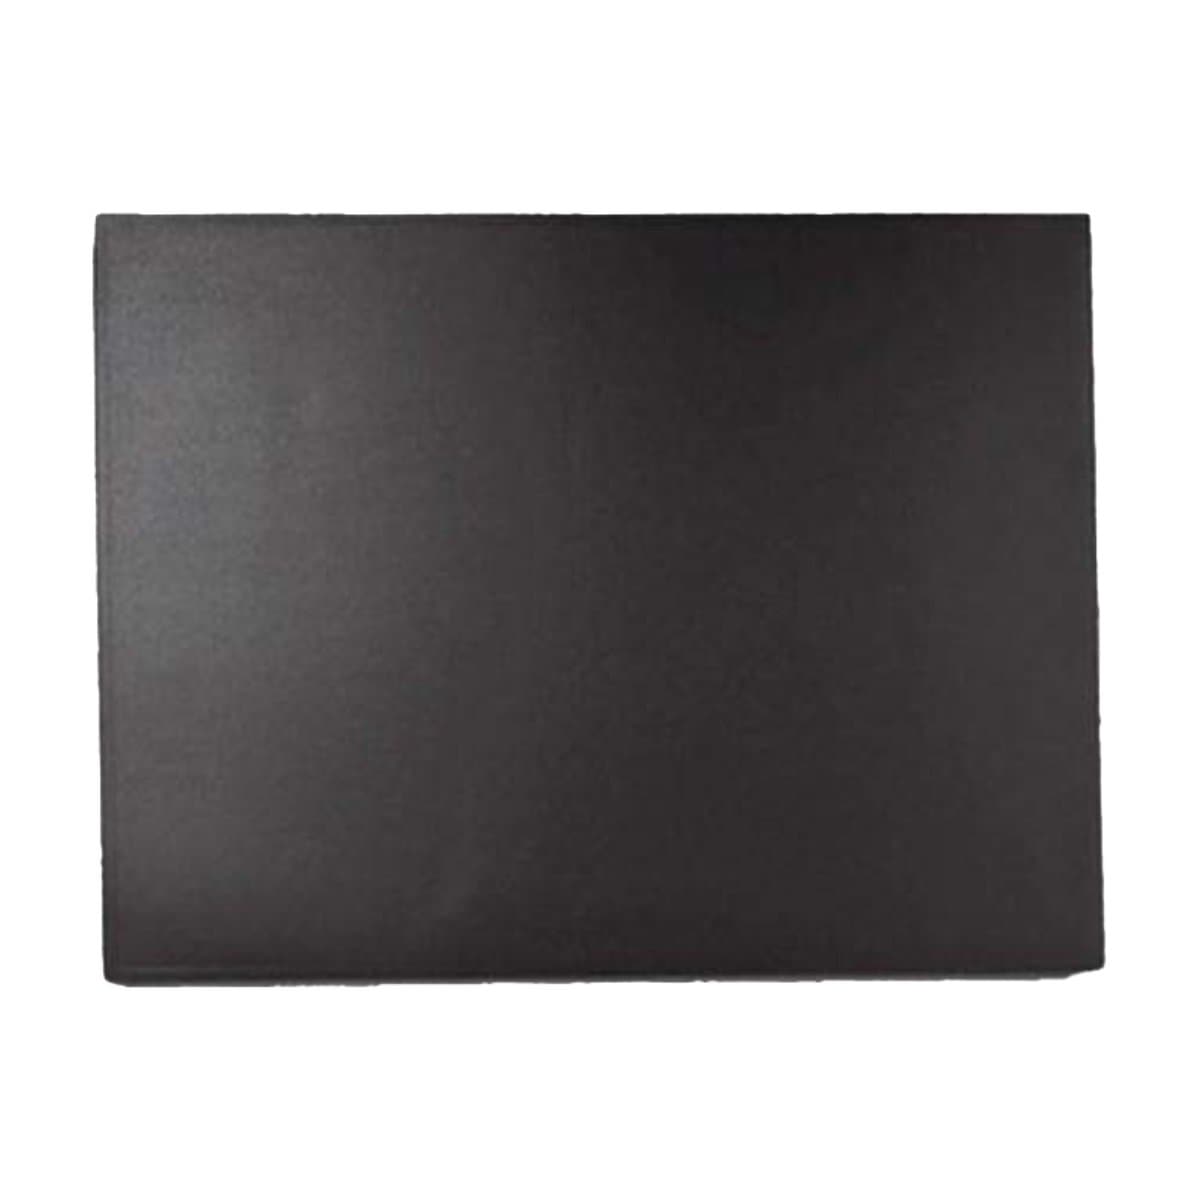 Laufer Durella Desk Mat, 53 x 40 cm, Black